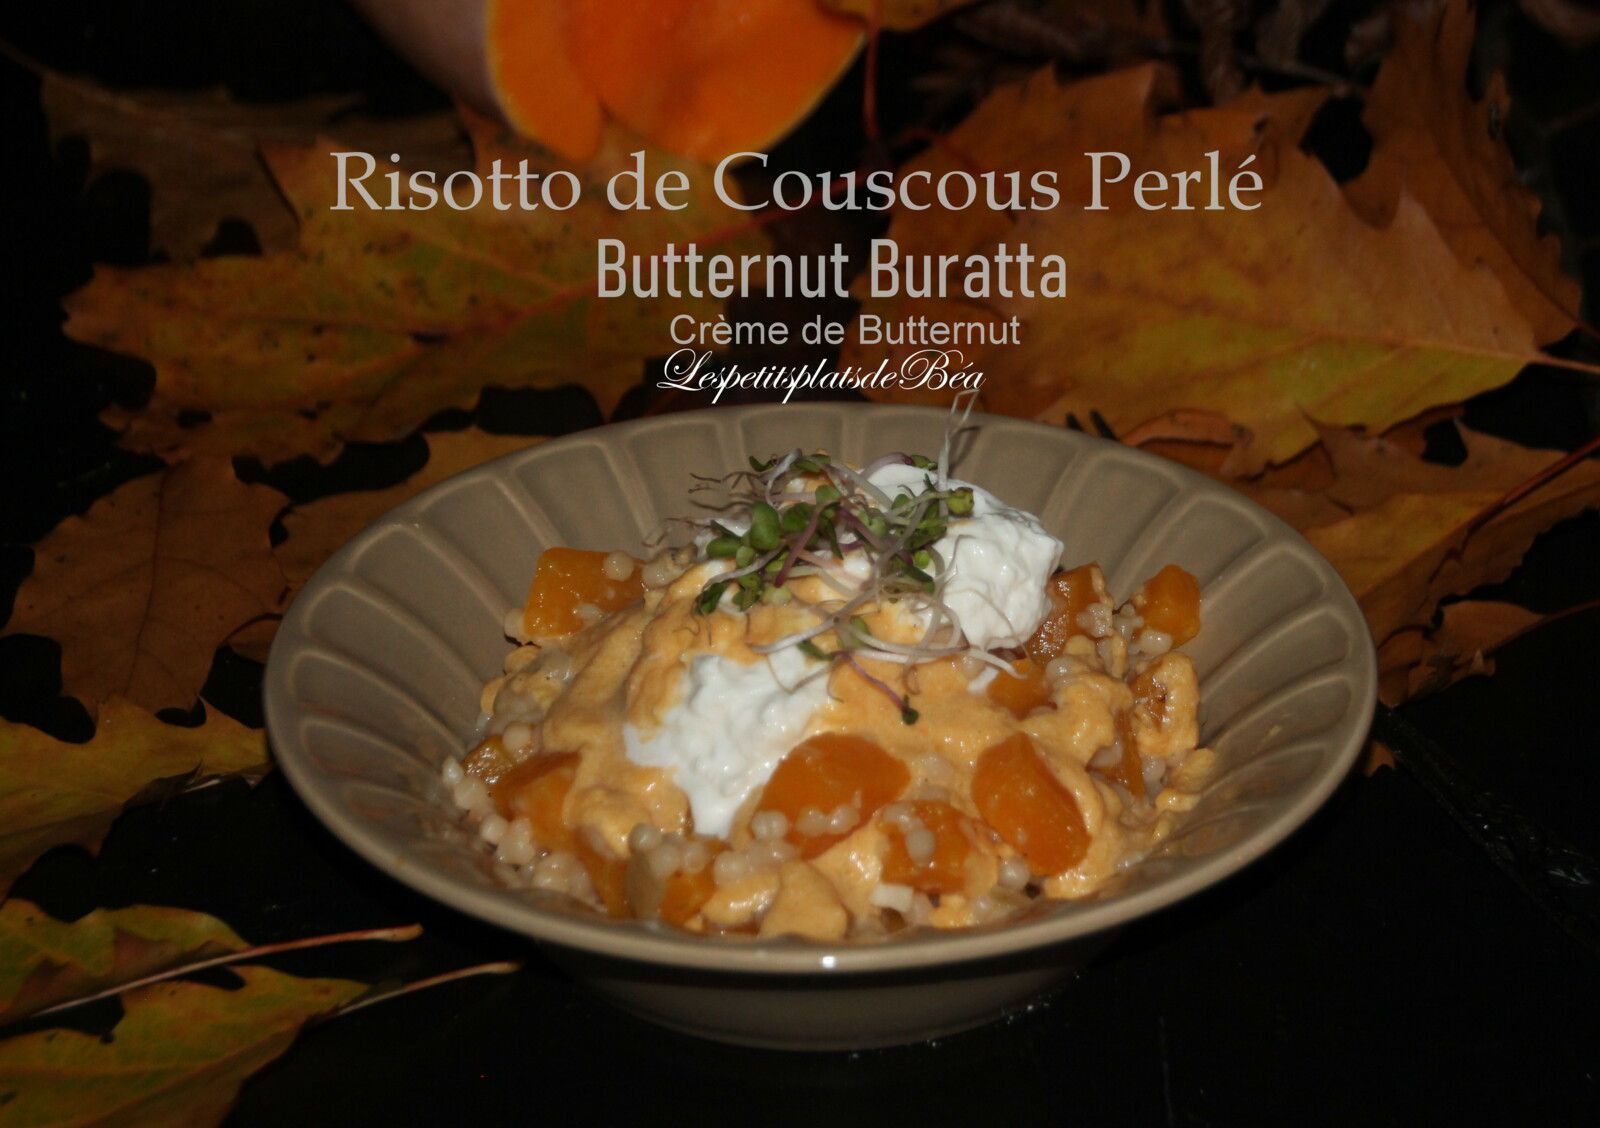 Risotto de couscous perlé à la butternut et burrata, crème de butternut